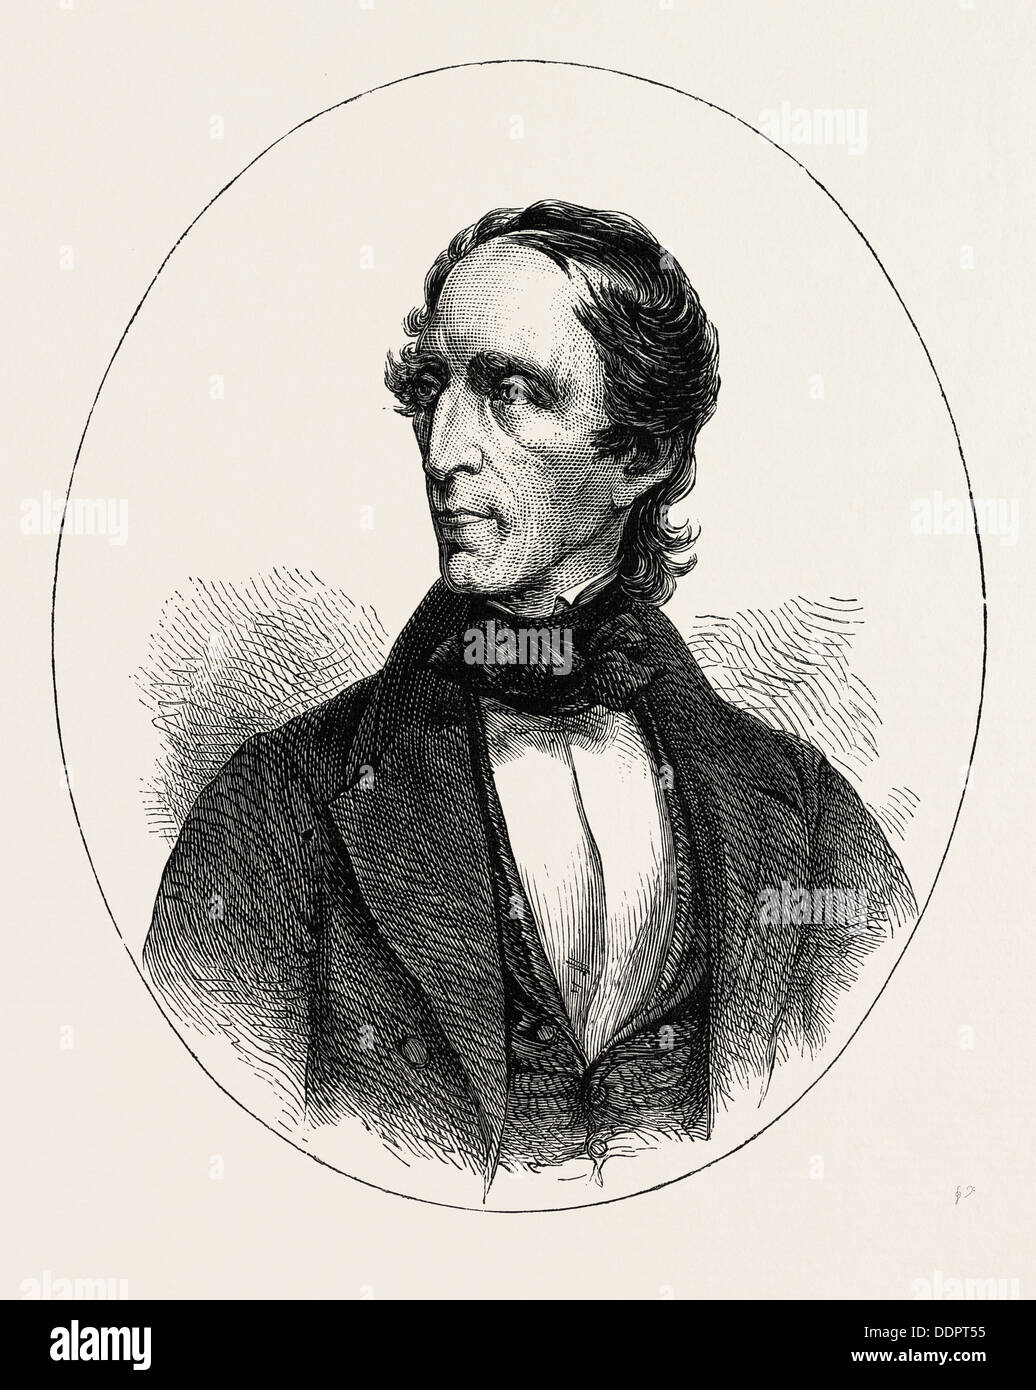 Le PRÉSIDENT TYLER, 1790-1862, était le dixième Président des États-Unis, US, USA, 1870 Gravure Banque D'Images